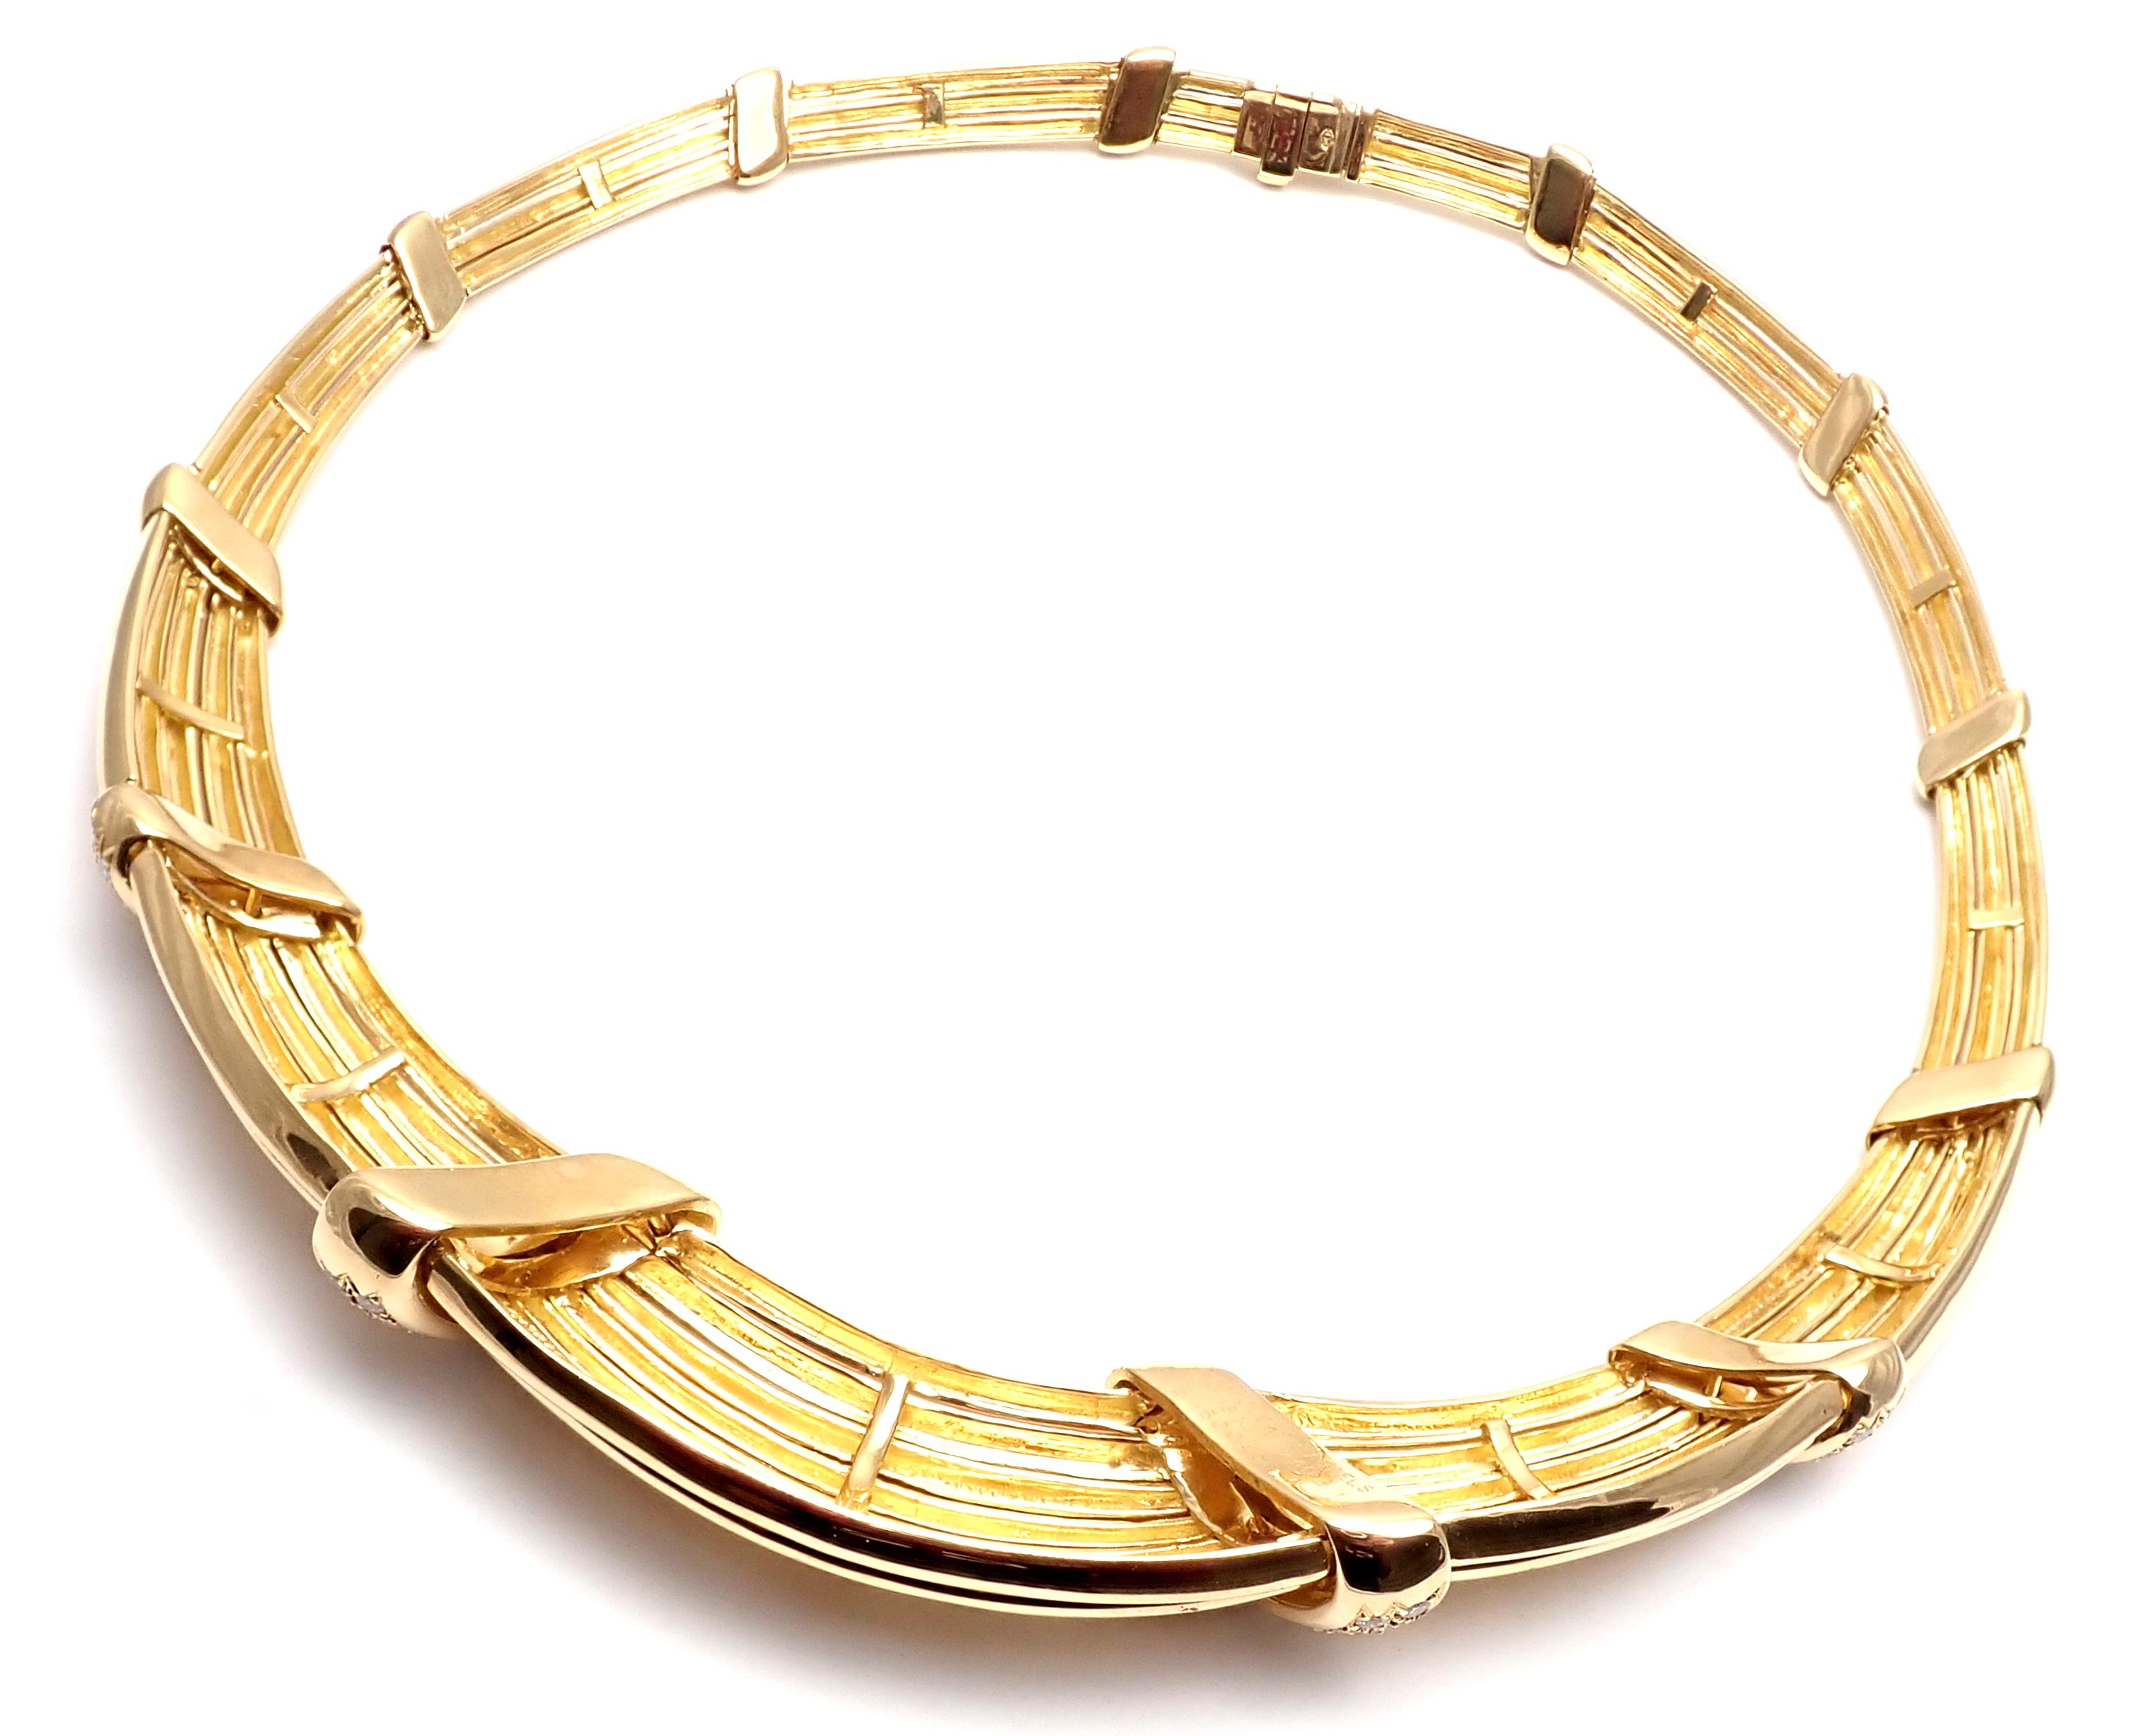 18k Gelbgold Diamant-Halskette von Van Cleef & Arpels.
Mit72 Diamanten im Brillantrundschliff, Reinheit VVS1, Farbe E
Gesamtgewicht ca. 2,40 ct.
Dieses Collier wird mit einem Servicepapier von Van Cleef & Arpels geliefert.
Einzelheiten:
Gewicht: